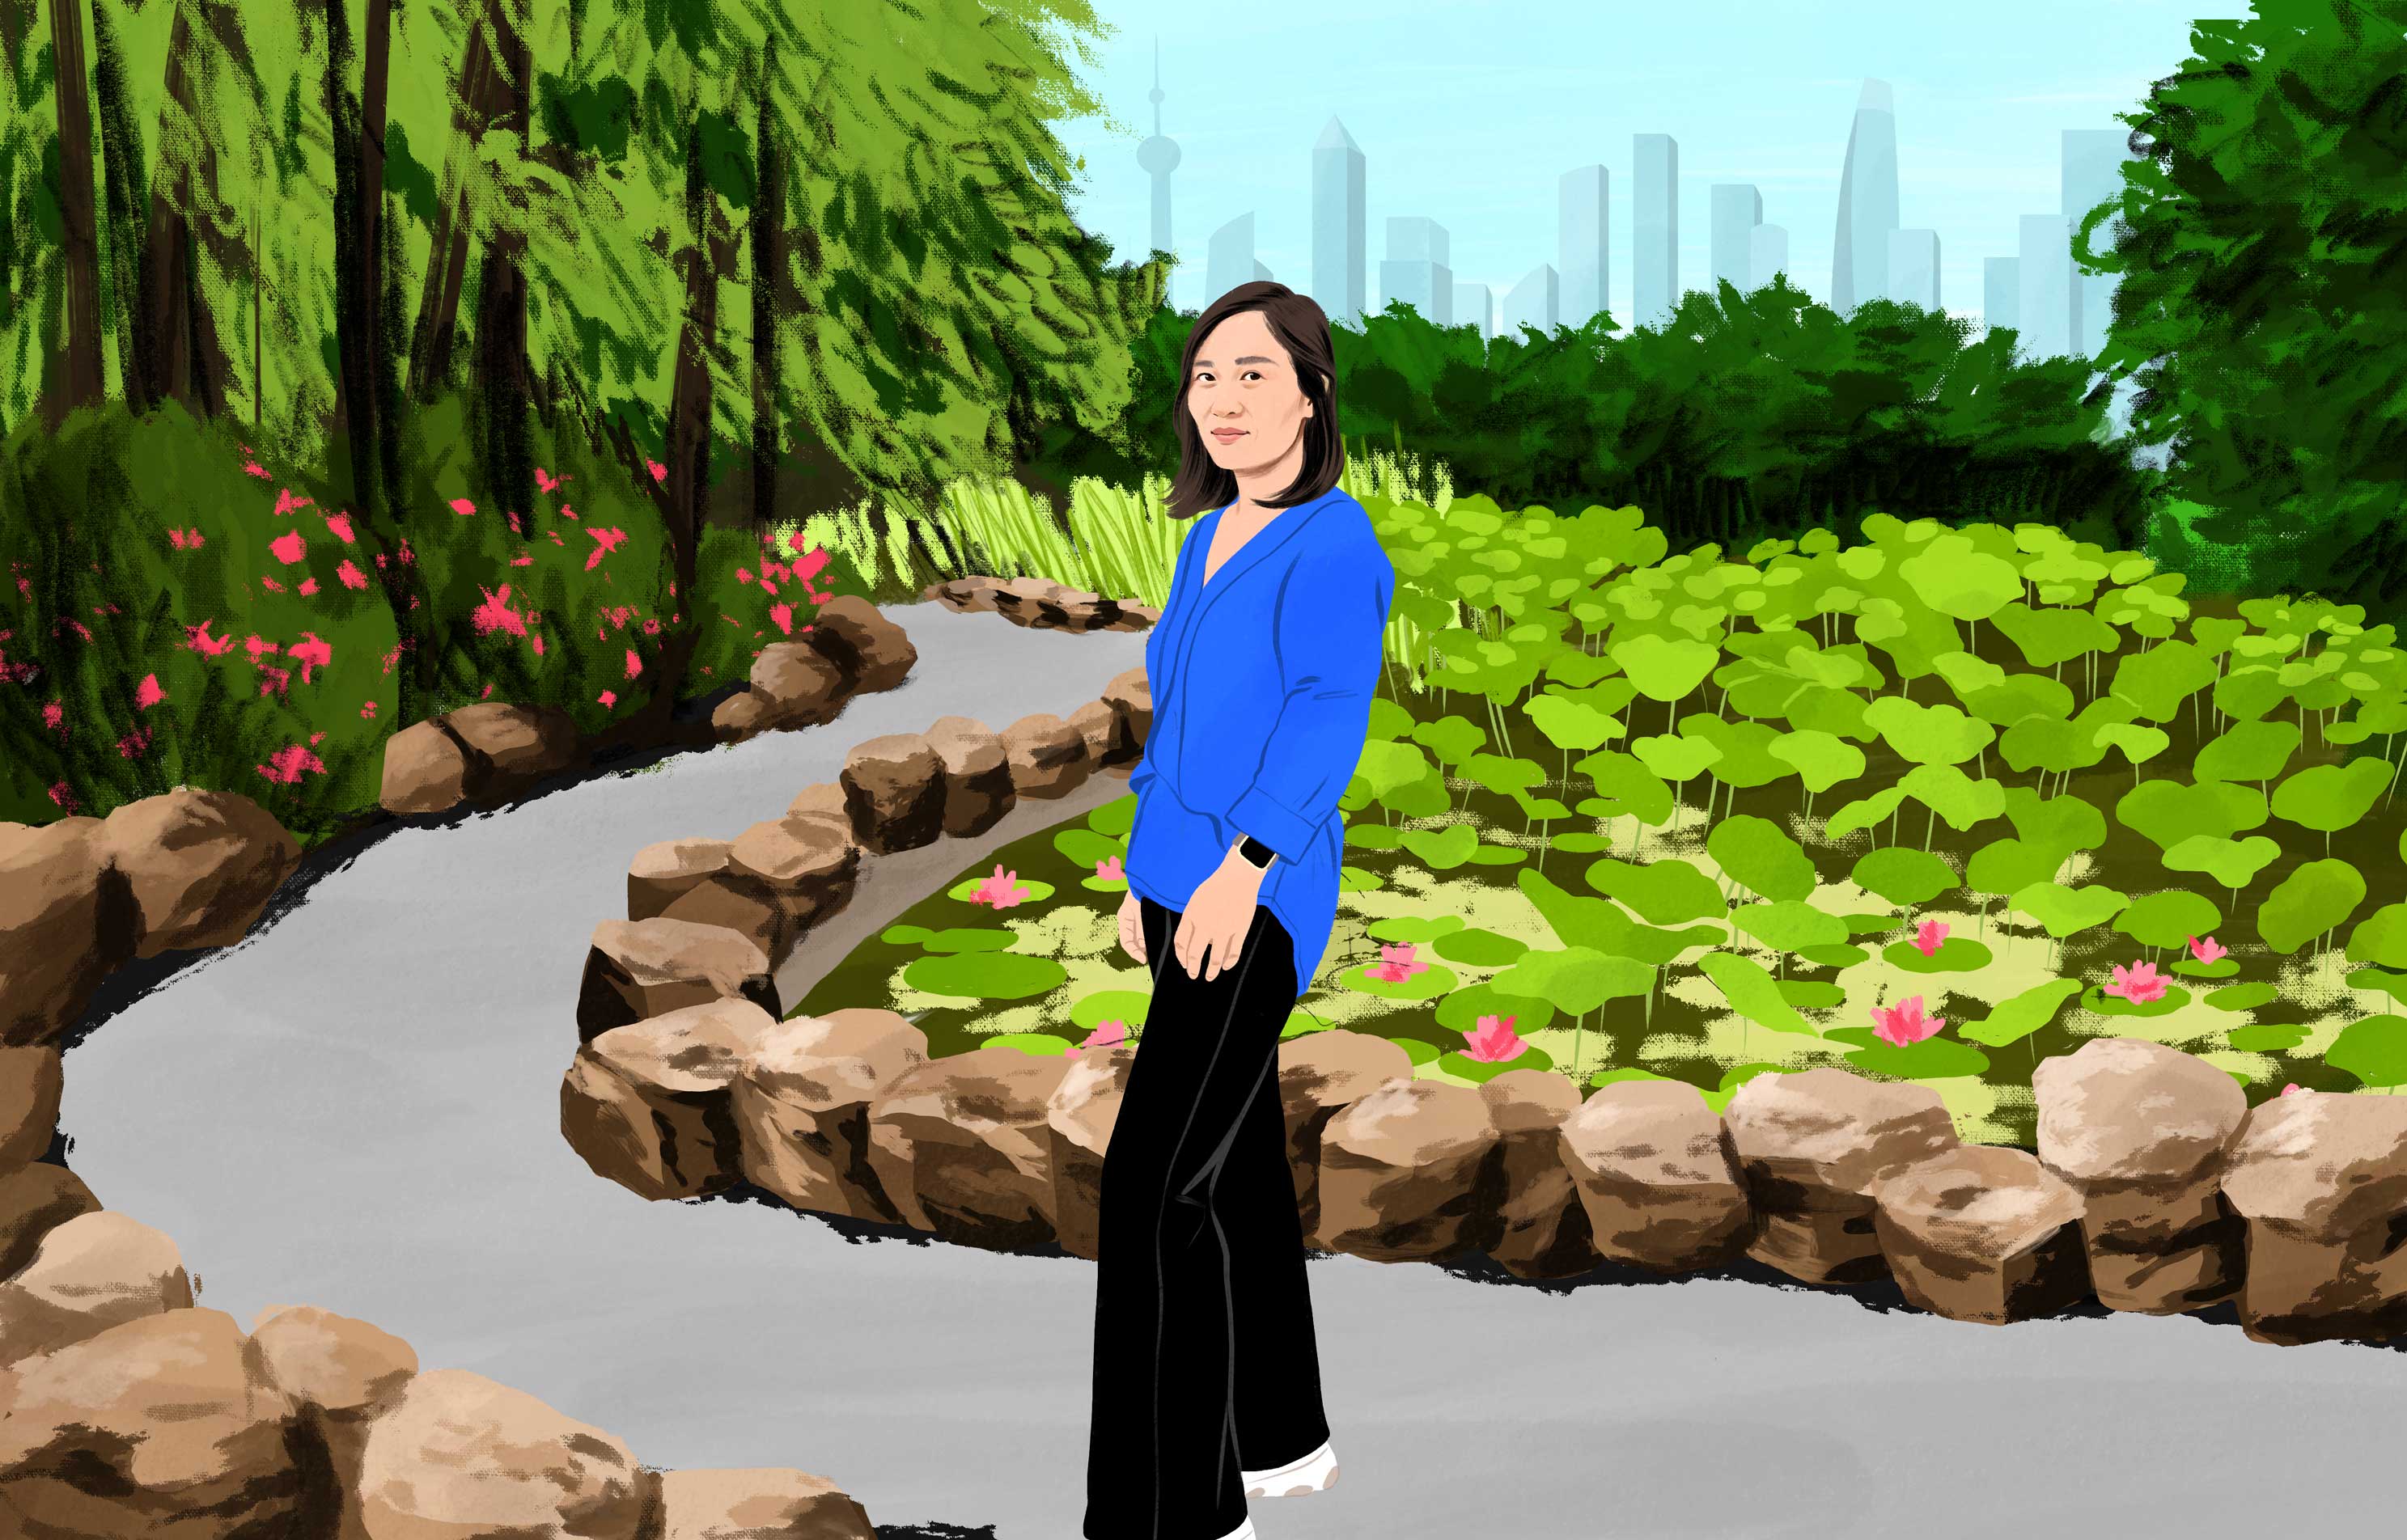 Xu geht lächelnd durch einen grünen Stadtpark mit modernen Wolkenkratzern im fernen Hintergrund. 